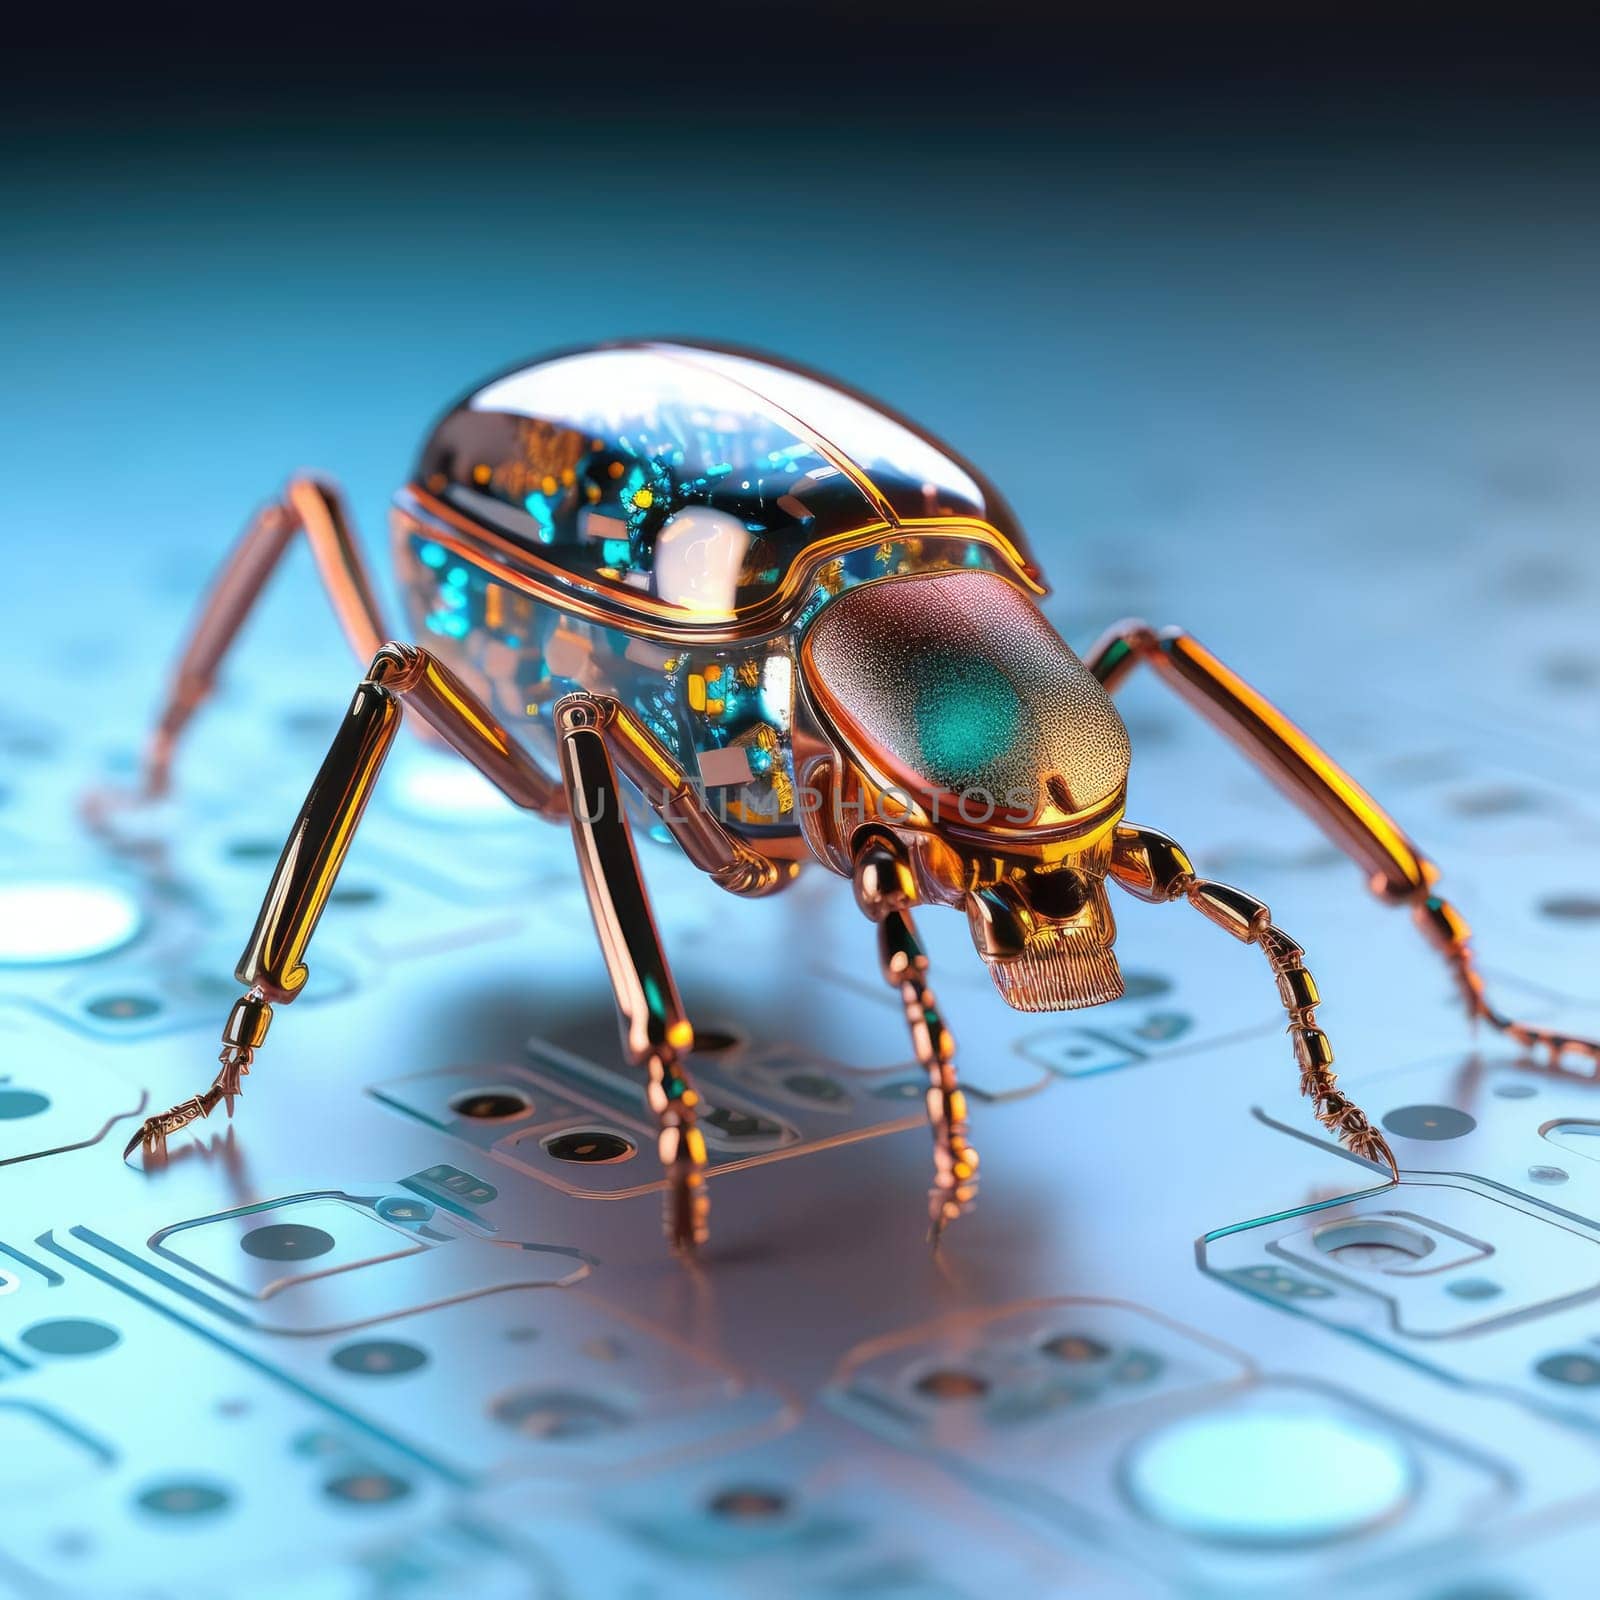 Electronic beetle on electronics by cherezoff